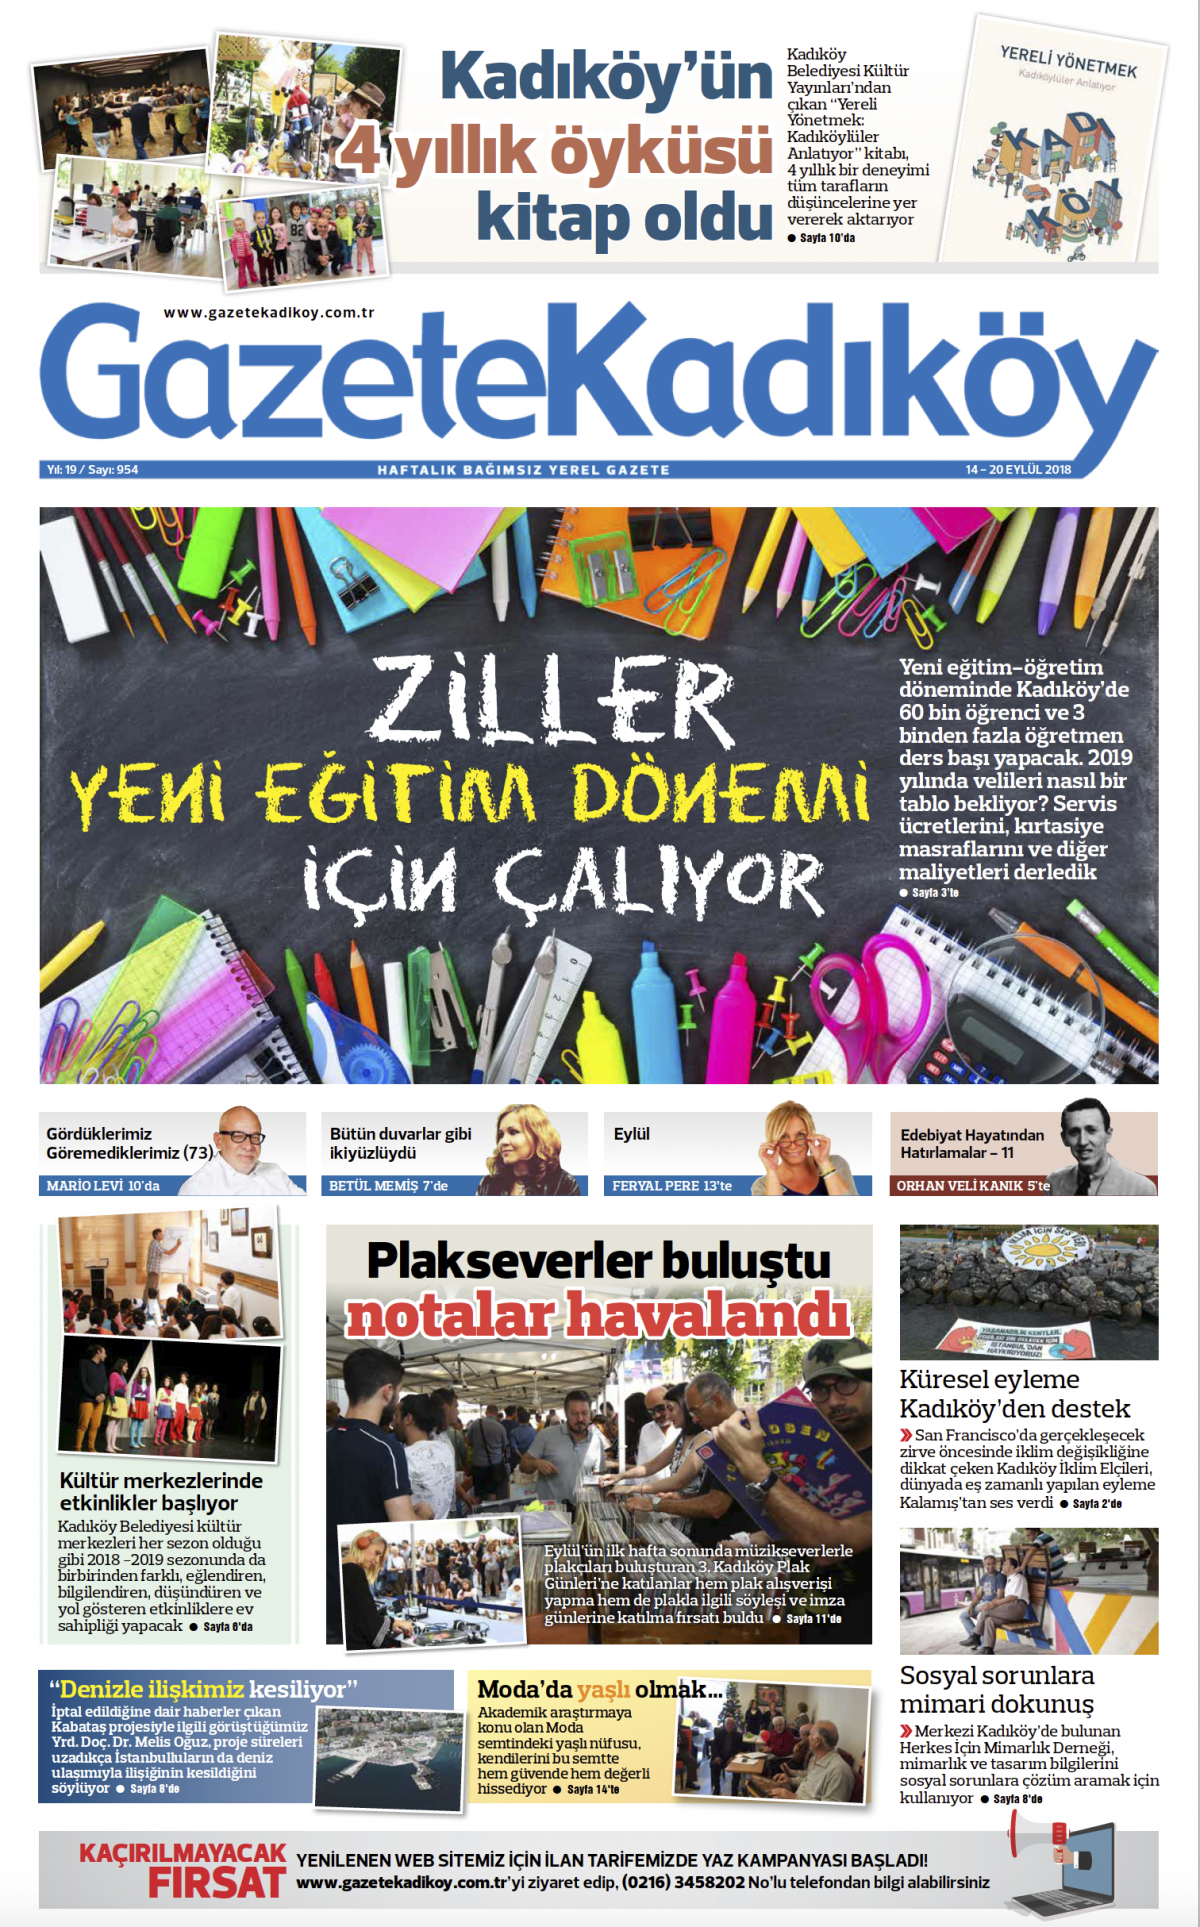 Gazete Kadıköy - 954. SAYI